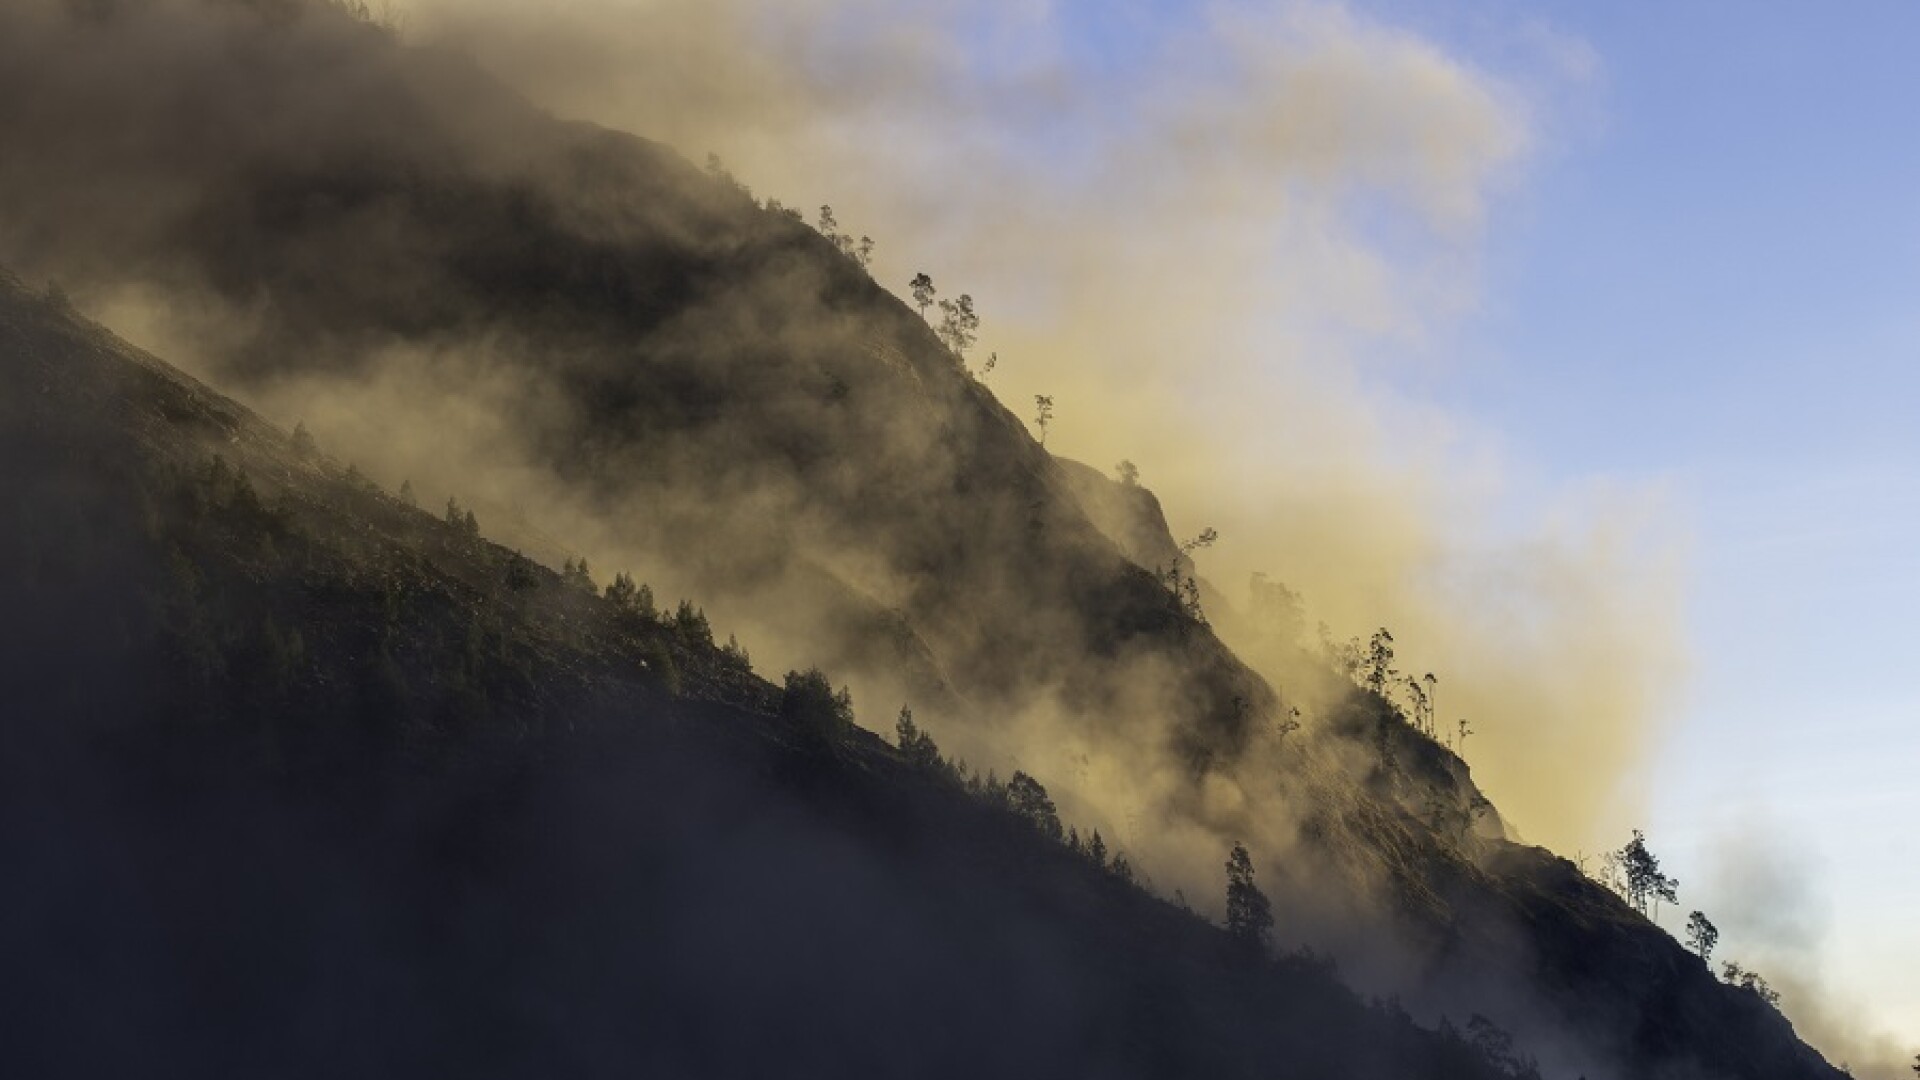 Patru persoane au murit într-o alunecare de teren produsă într-o provincie din Indonezia